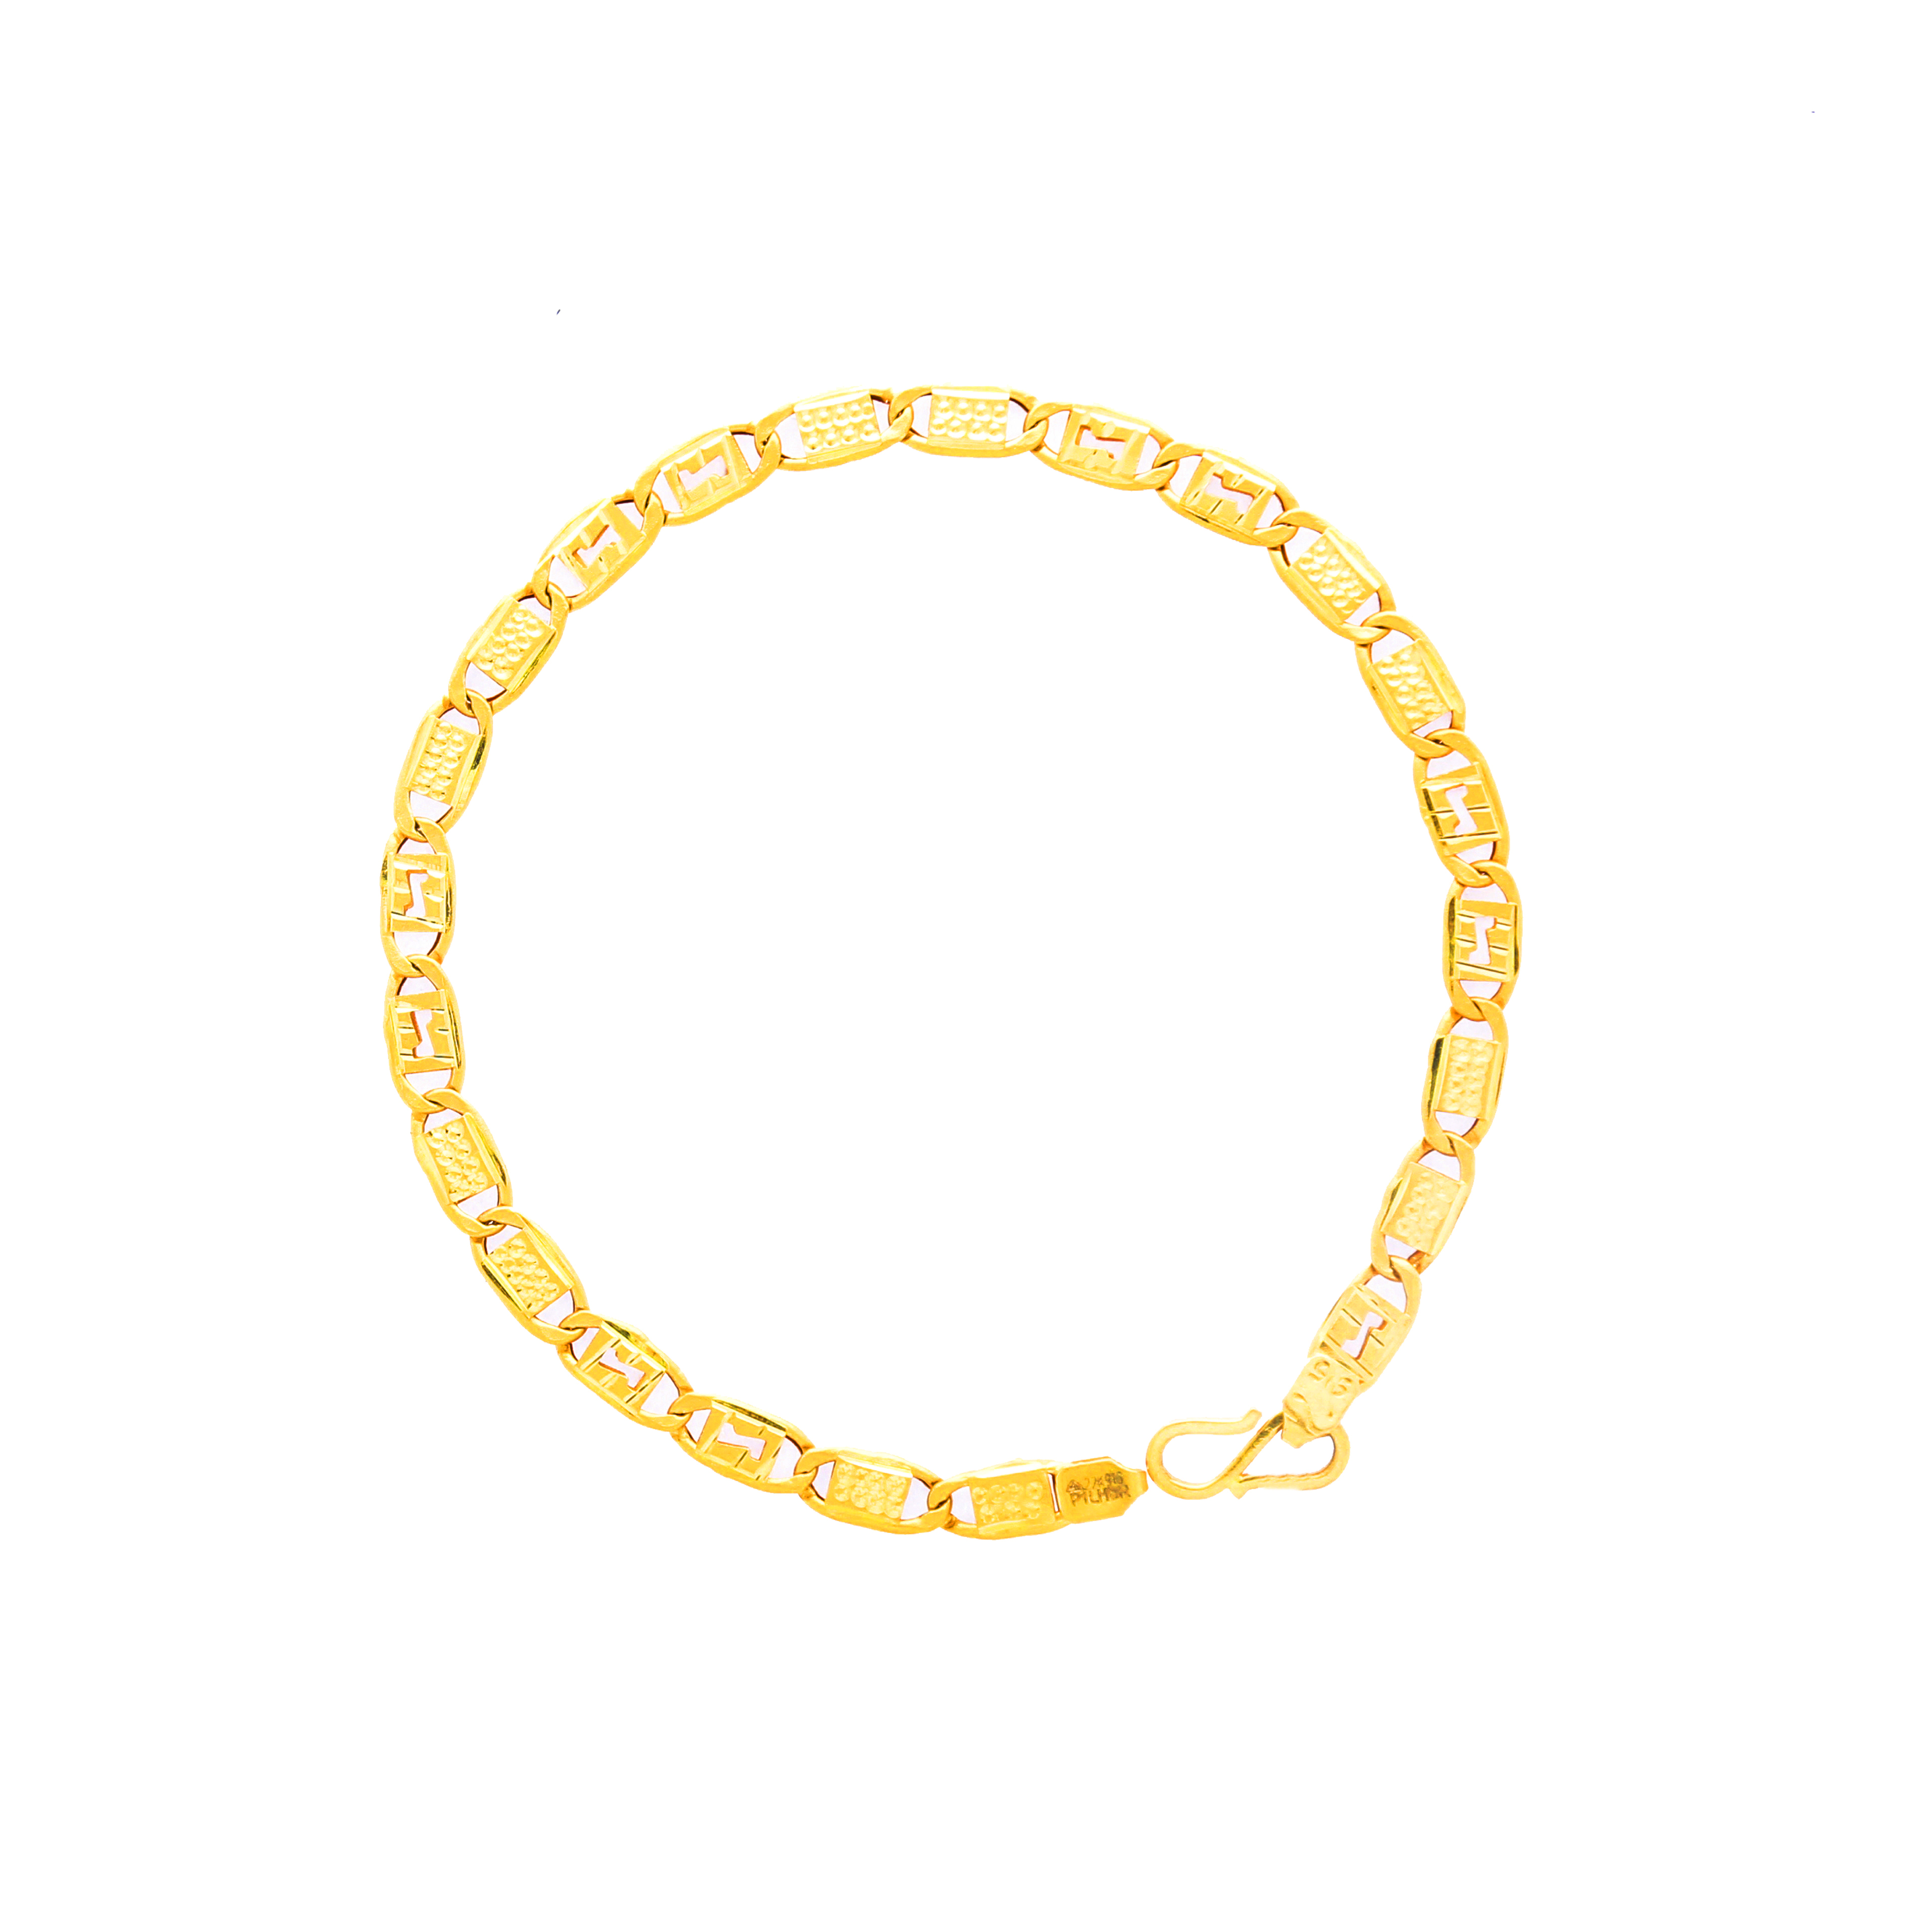 Experience 107+ gold bracelet for men